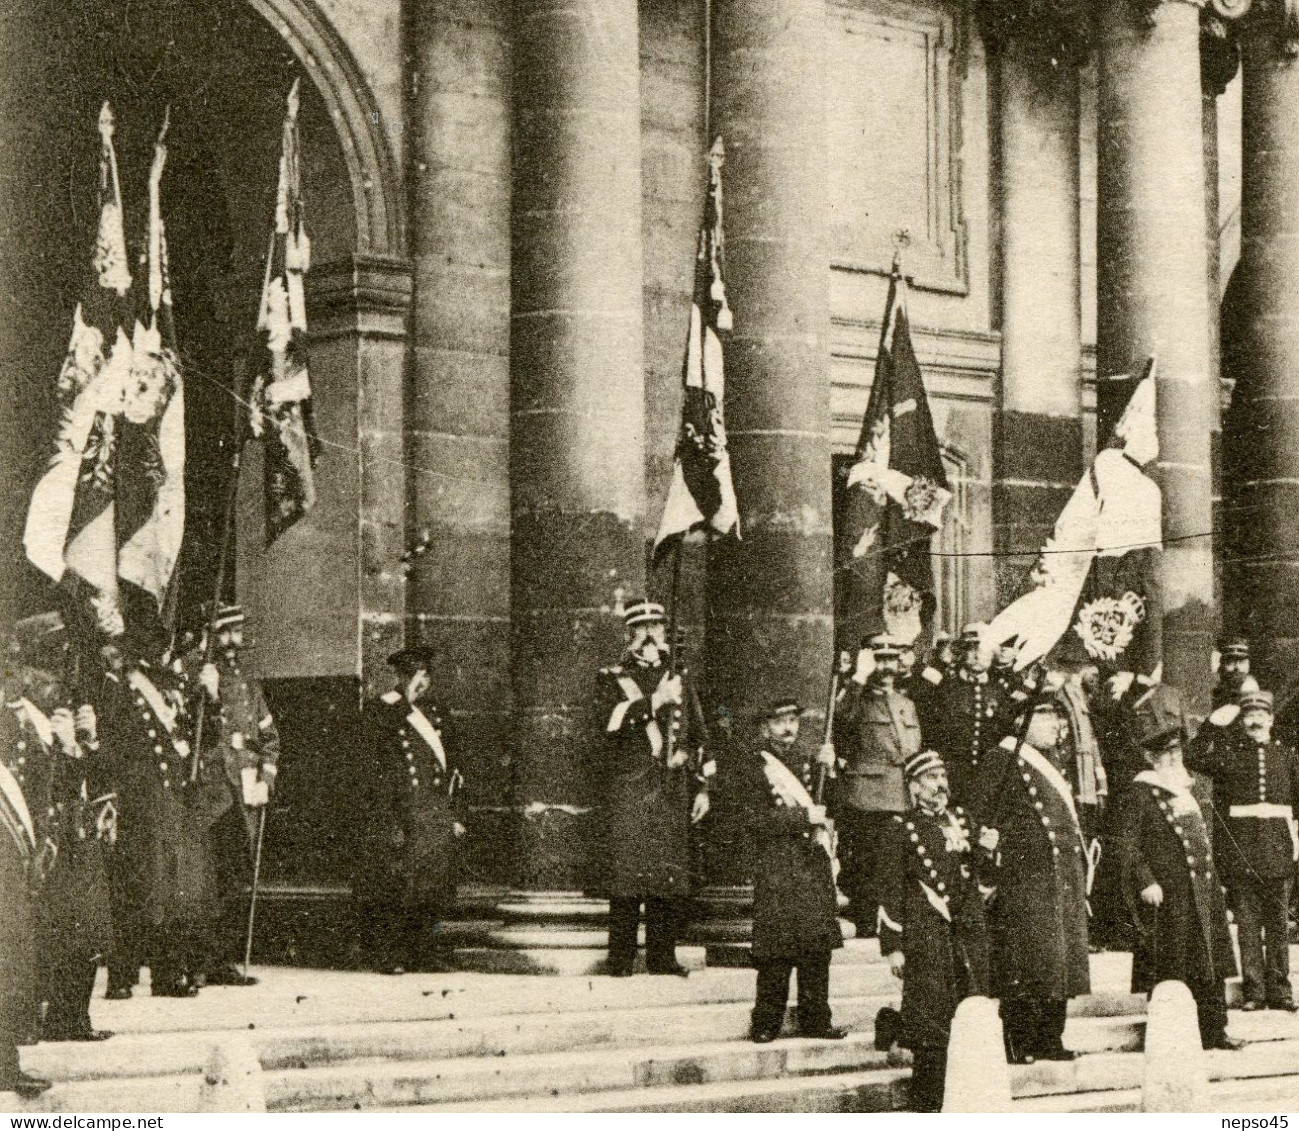 Remise Des Drapeaux Pris Aux Allemands Au Gouverneur Des Invalides Le 7 Octobre 1914. - Manifestazioni